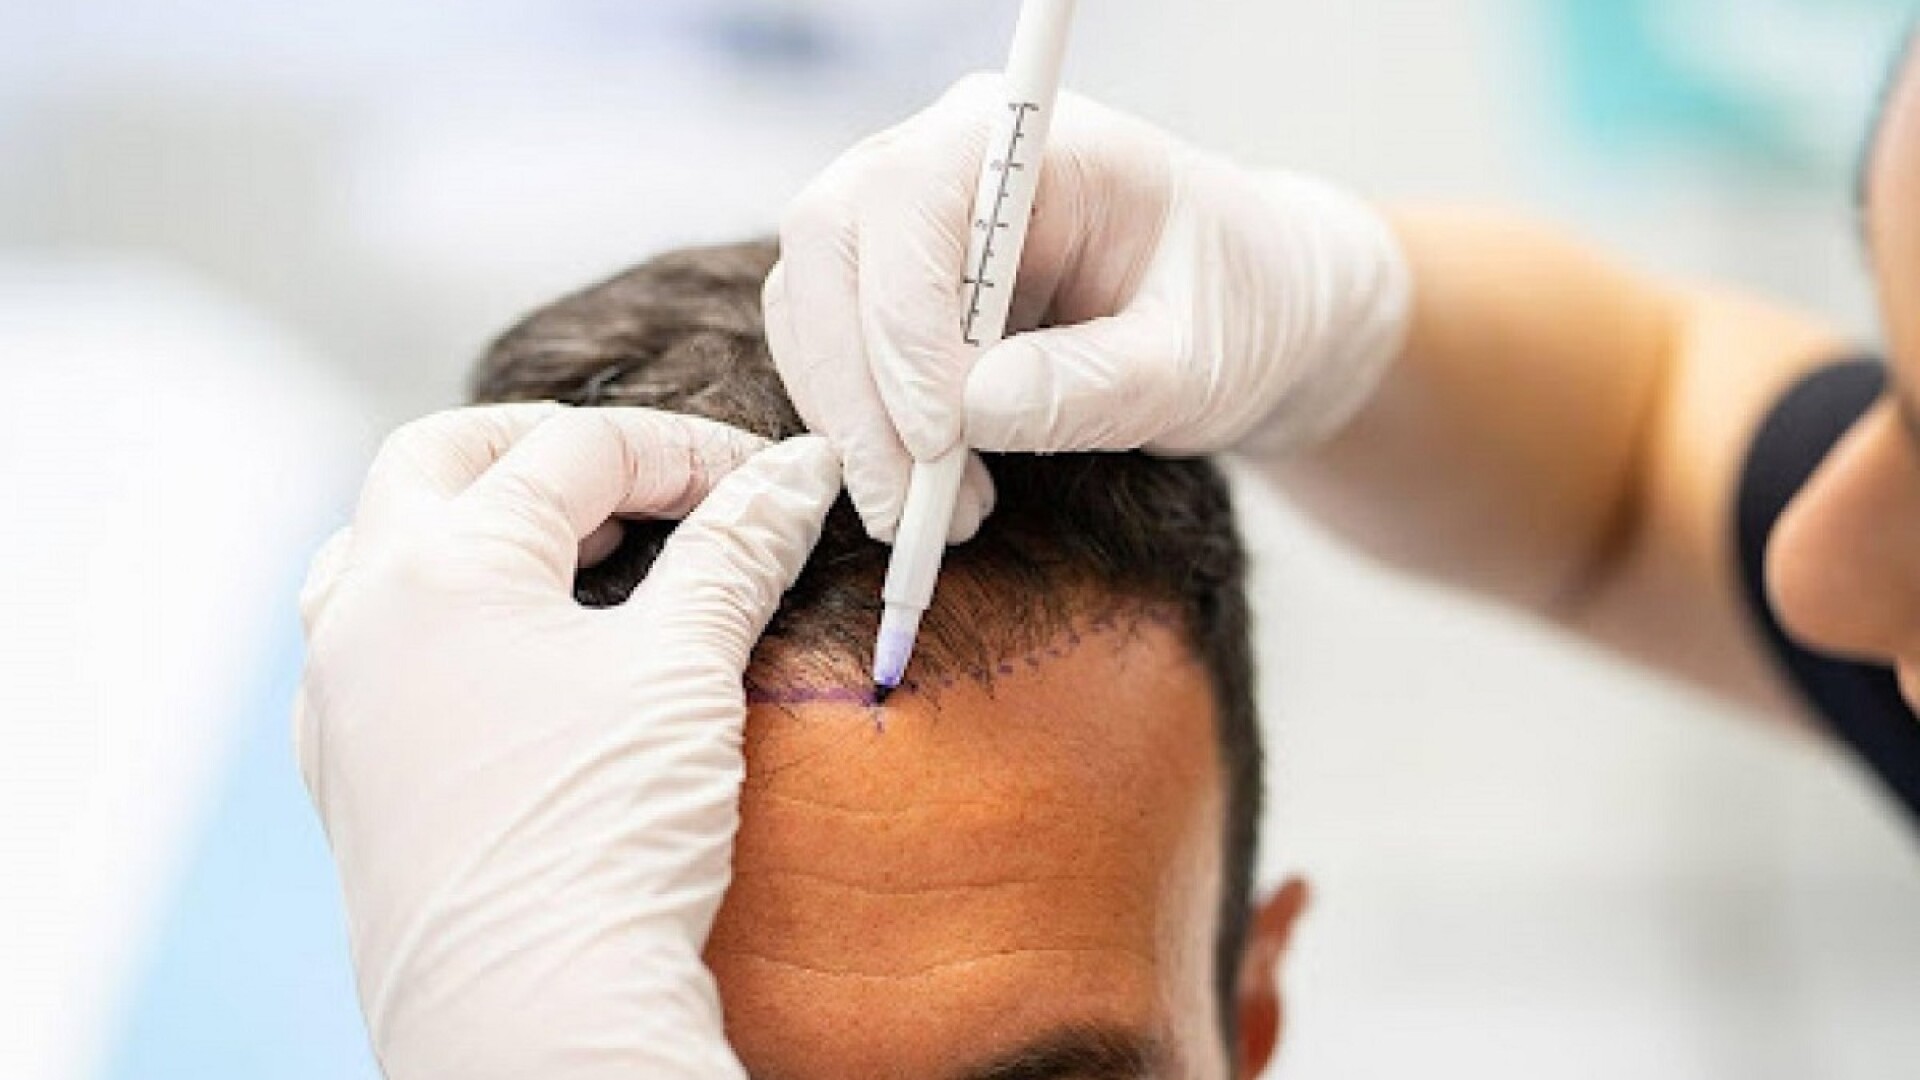 (P) Este implantul de păr permanent și cât costă?